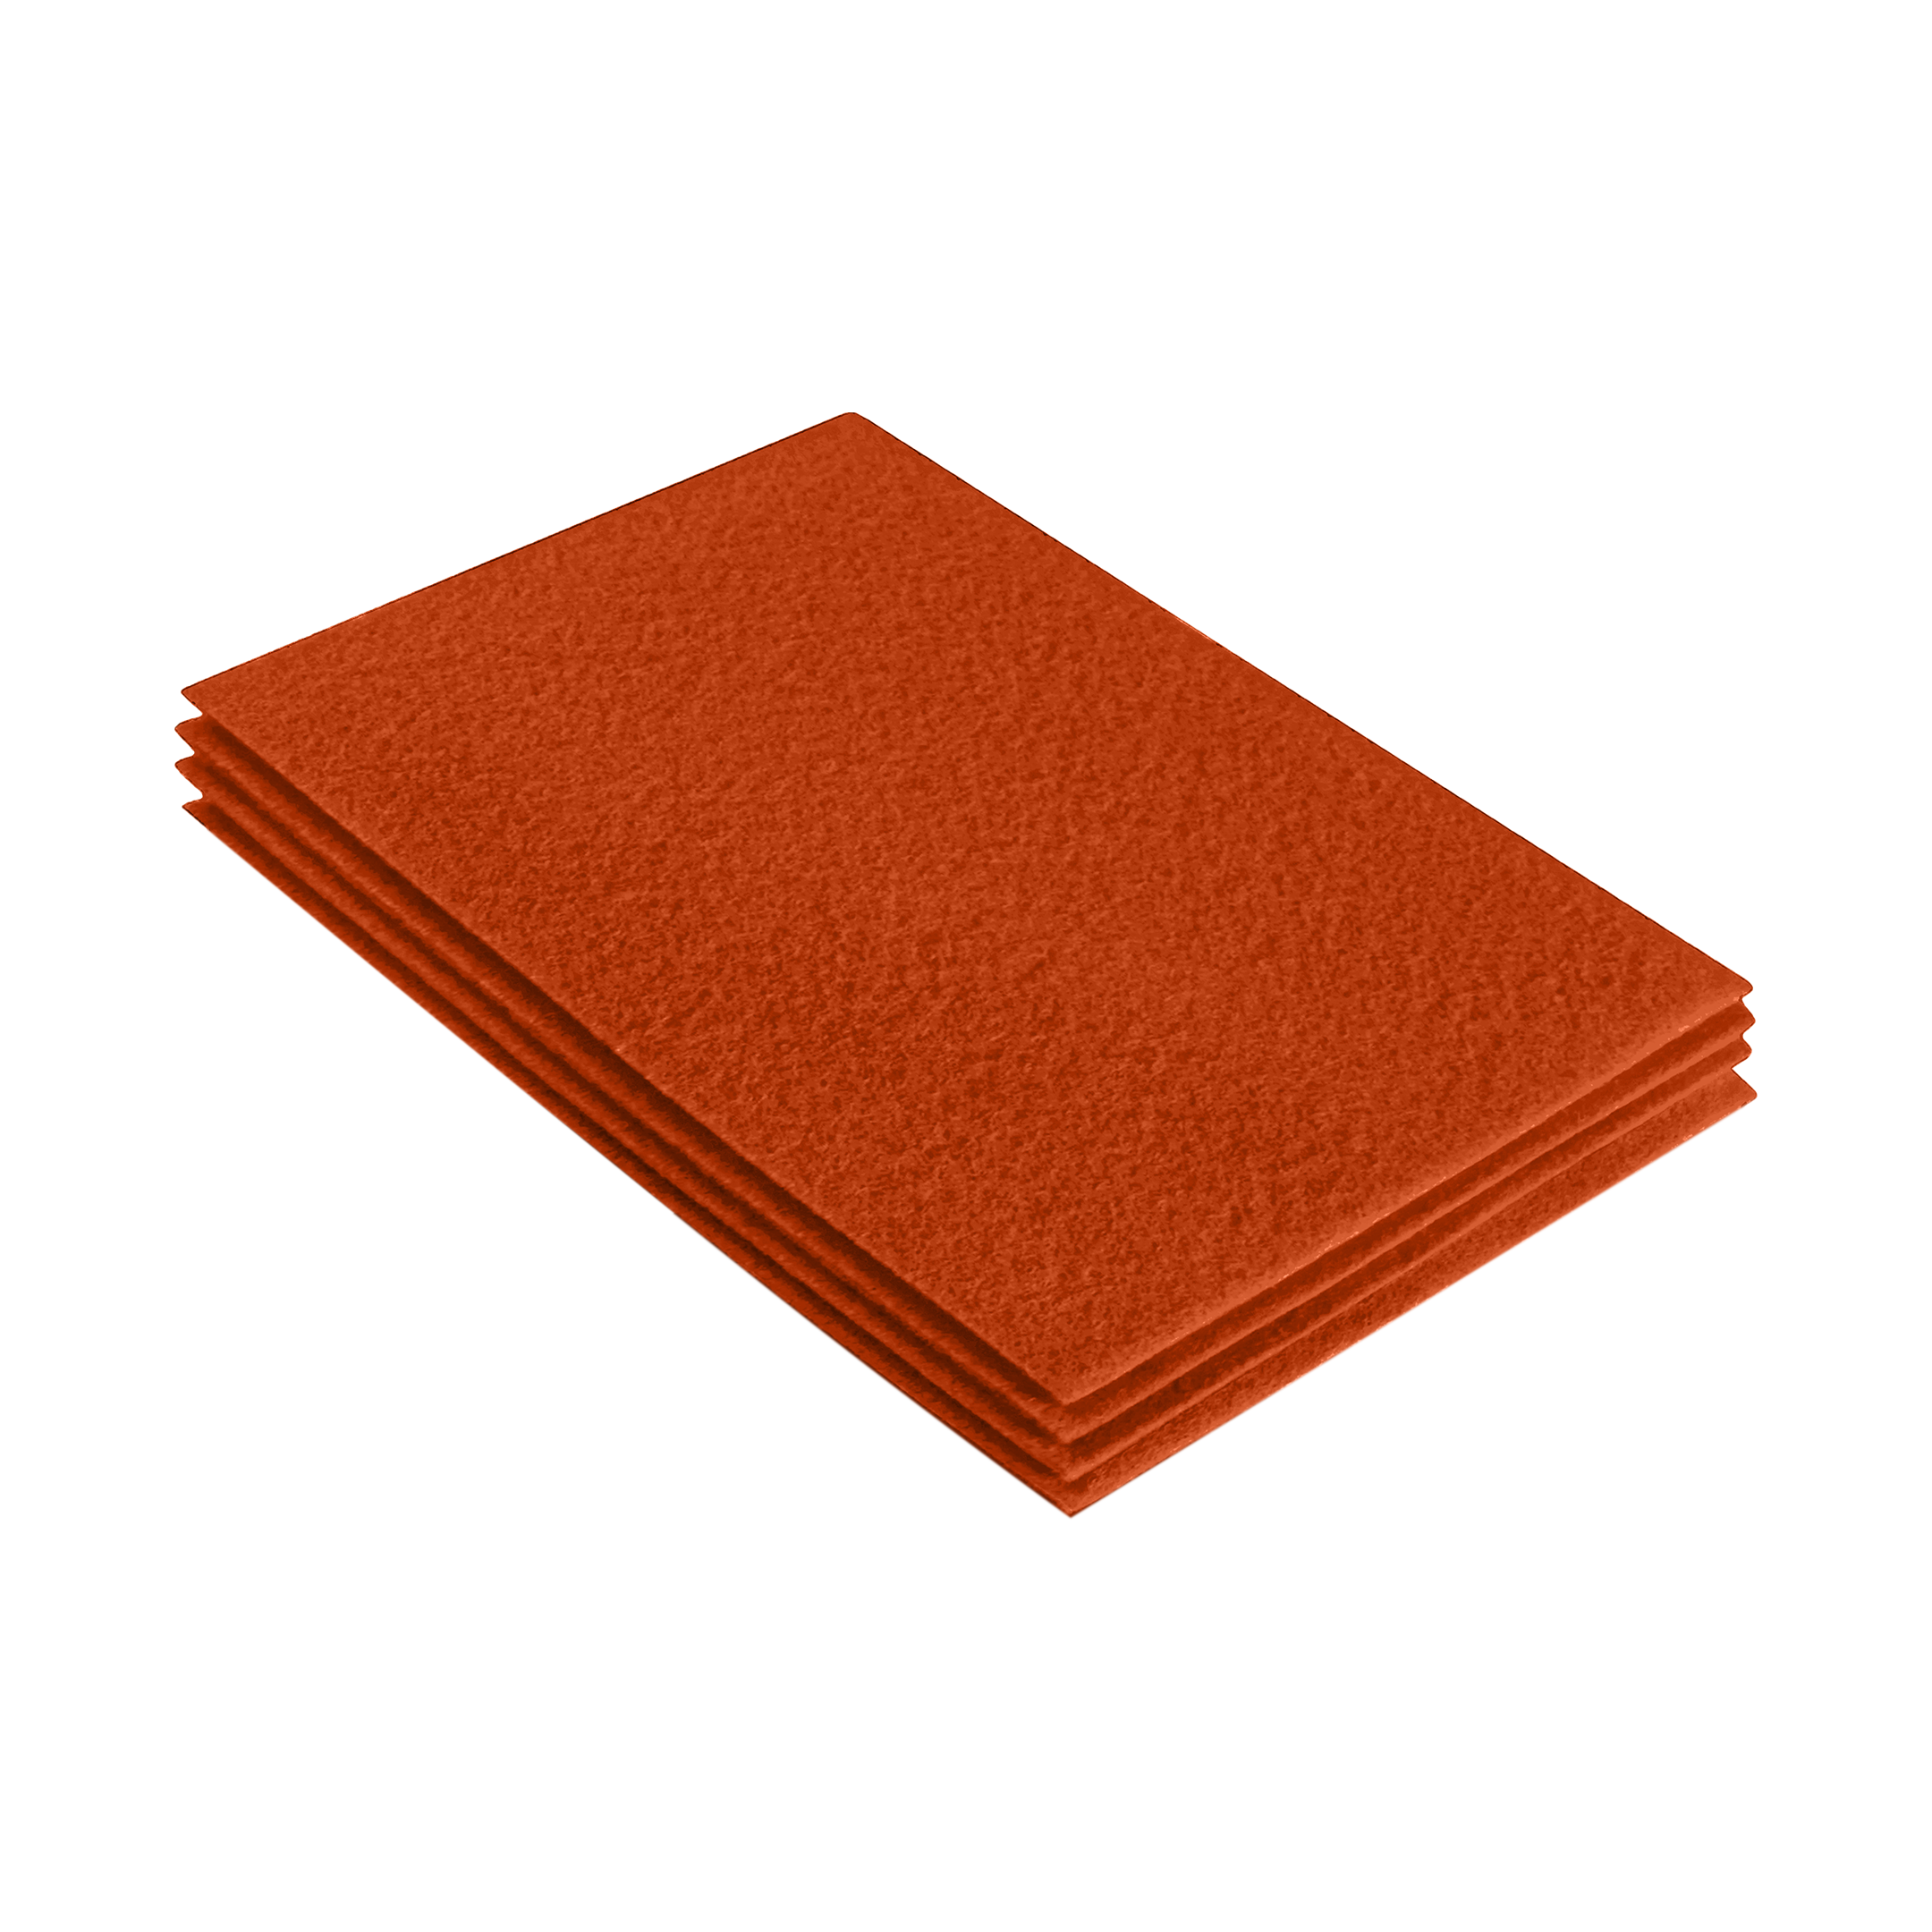 Acrylic Felt 9x12 Sheet Packs | Orange - 4 Sheets / Orange | FabricLA